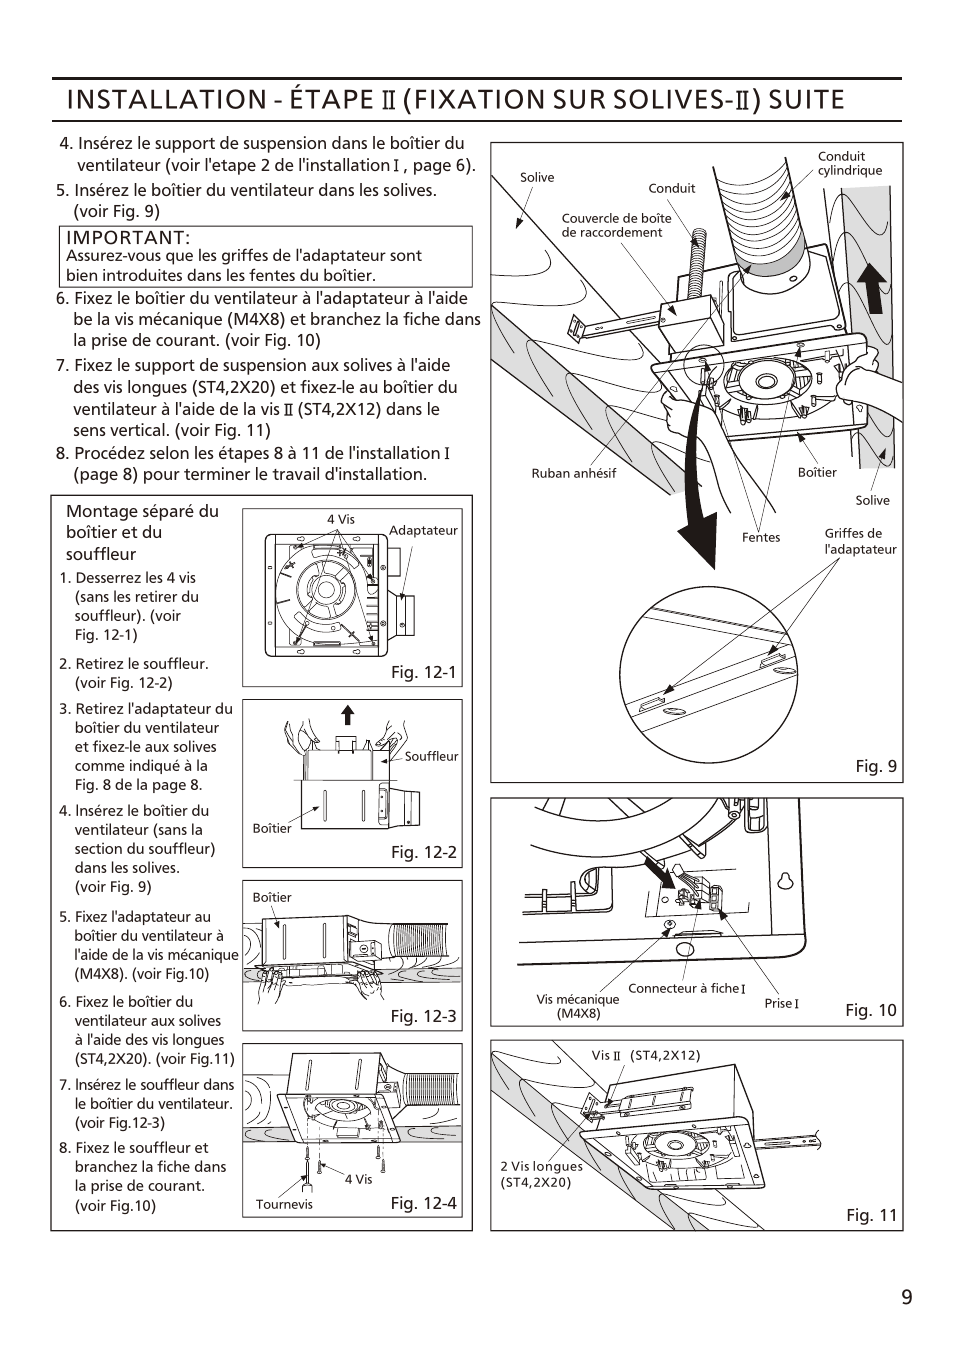 Installation - étape (fixation sur solives, Suite | Panasonic FV-08VFL3 Manuel d'utilisation | Page 9 / 16